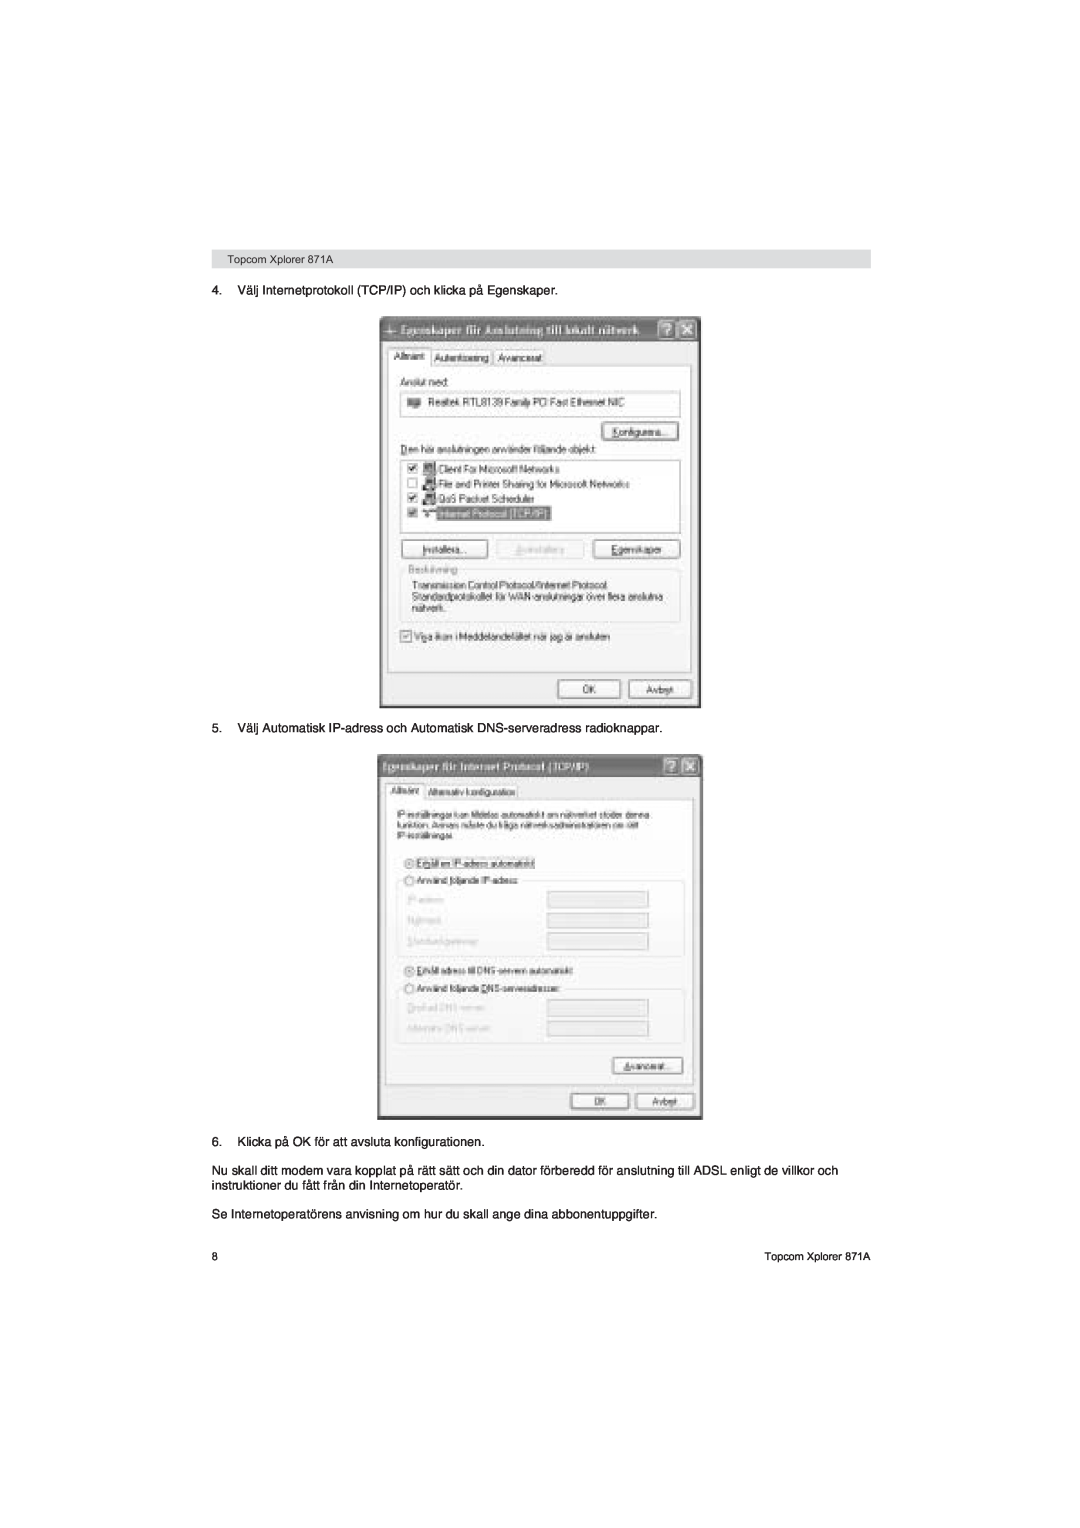 Topcom 871A manual 4. Välj Internetprotokoll TCP/IP och klicka på Egenskaper 